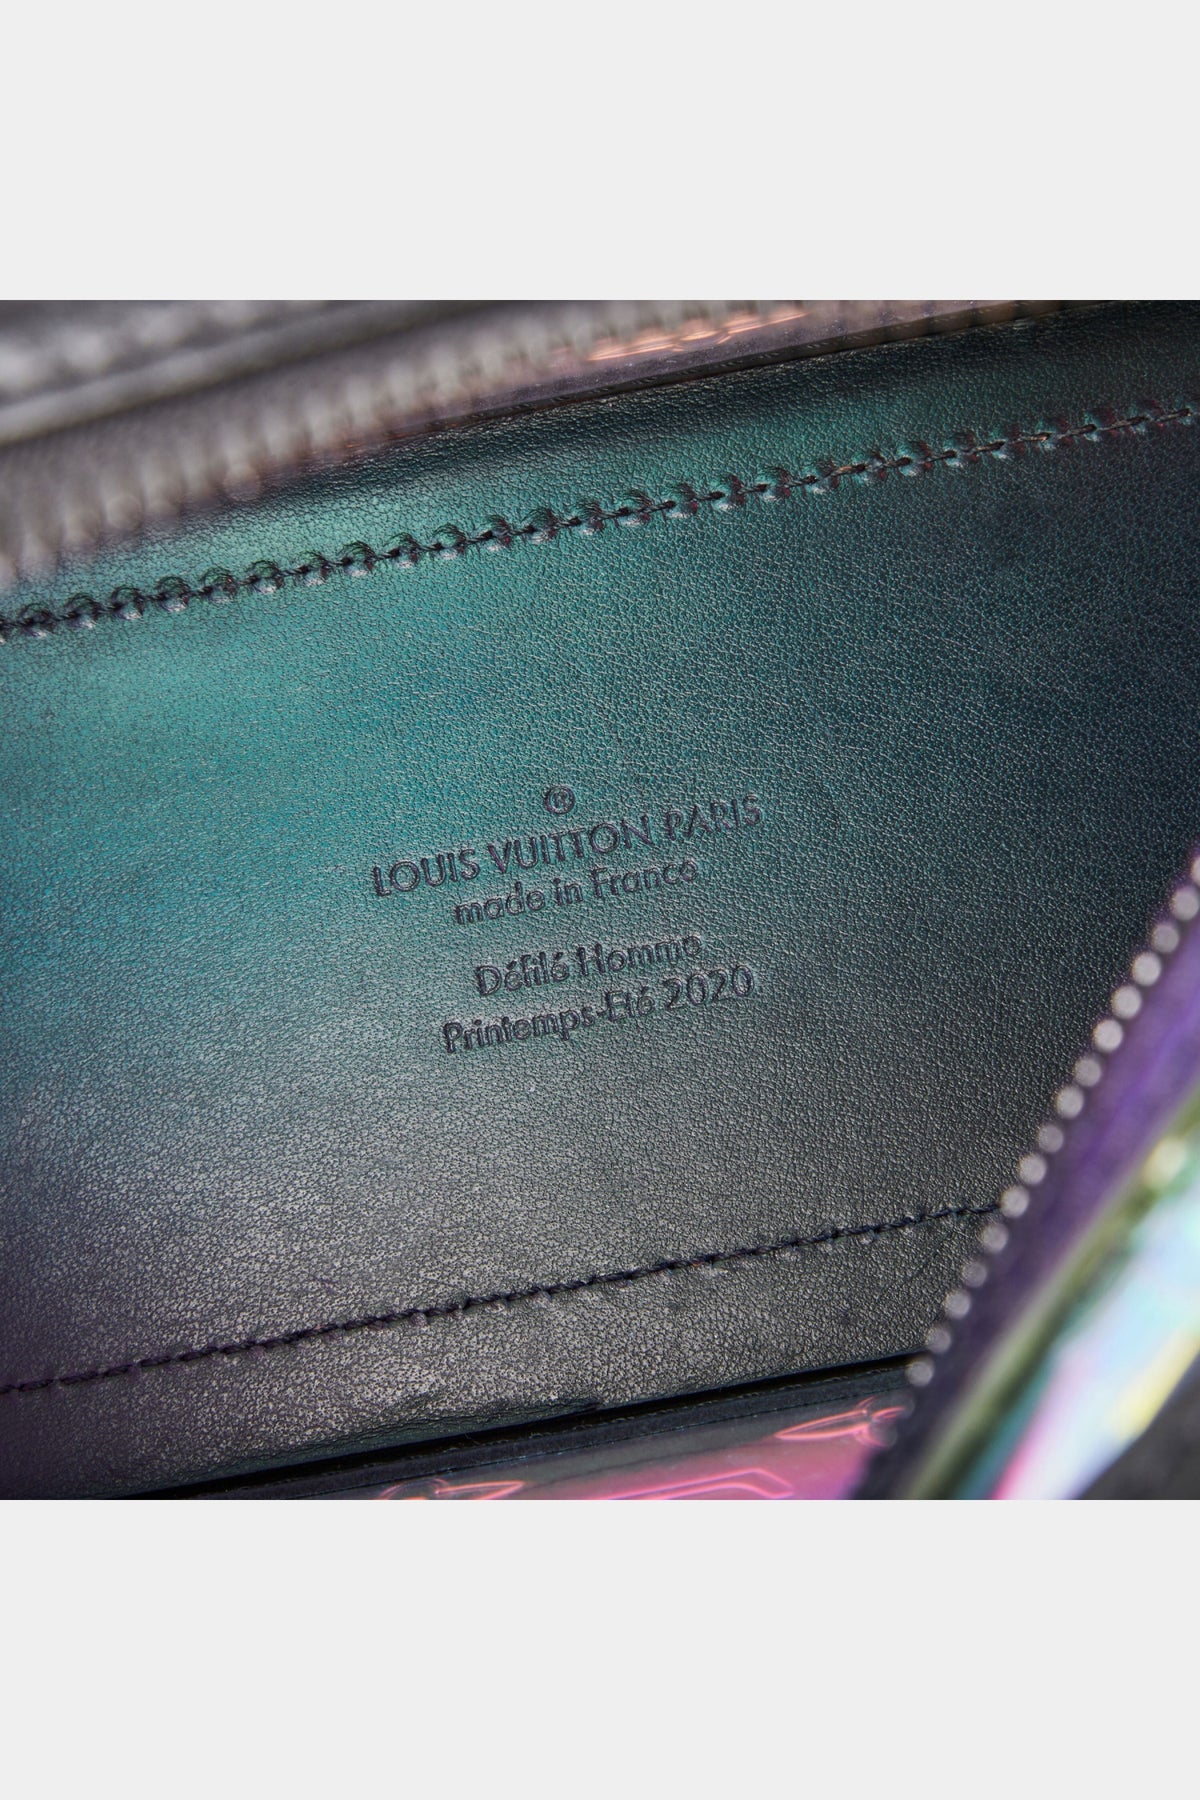 LOUIS VUITTON Diagonal Shoulder Bag Monogram Prism Soft Trunk Leather/